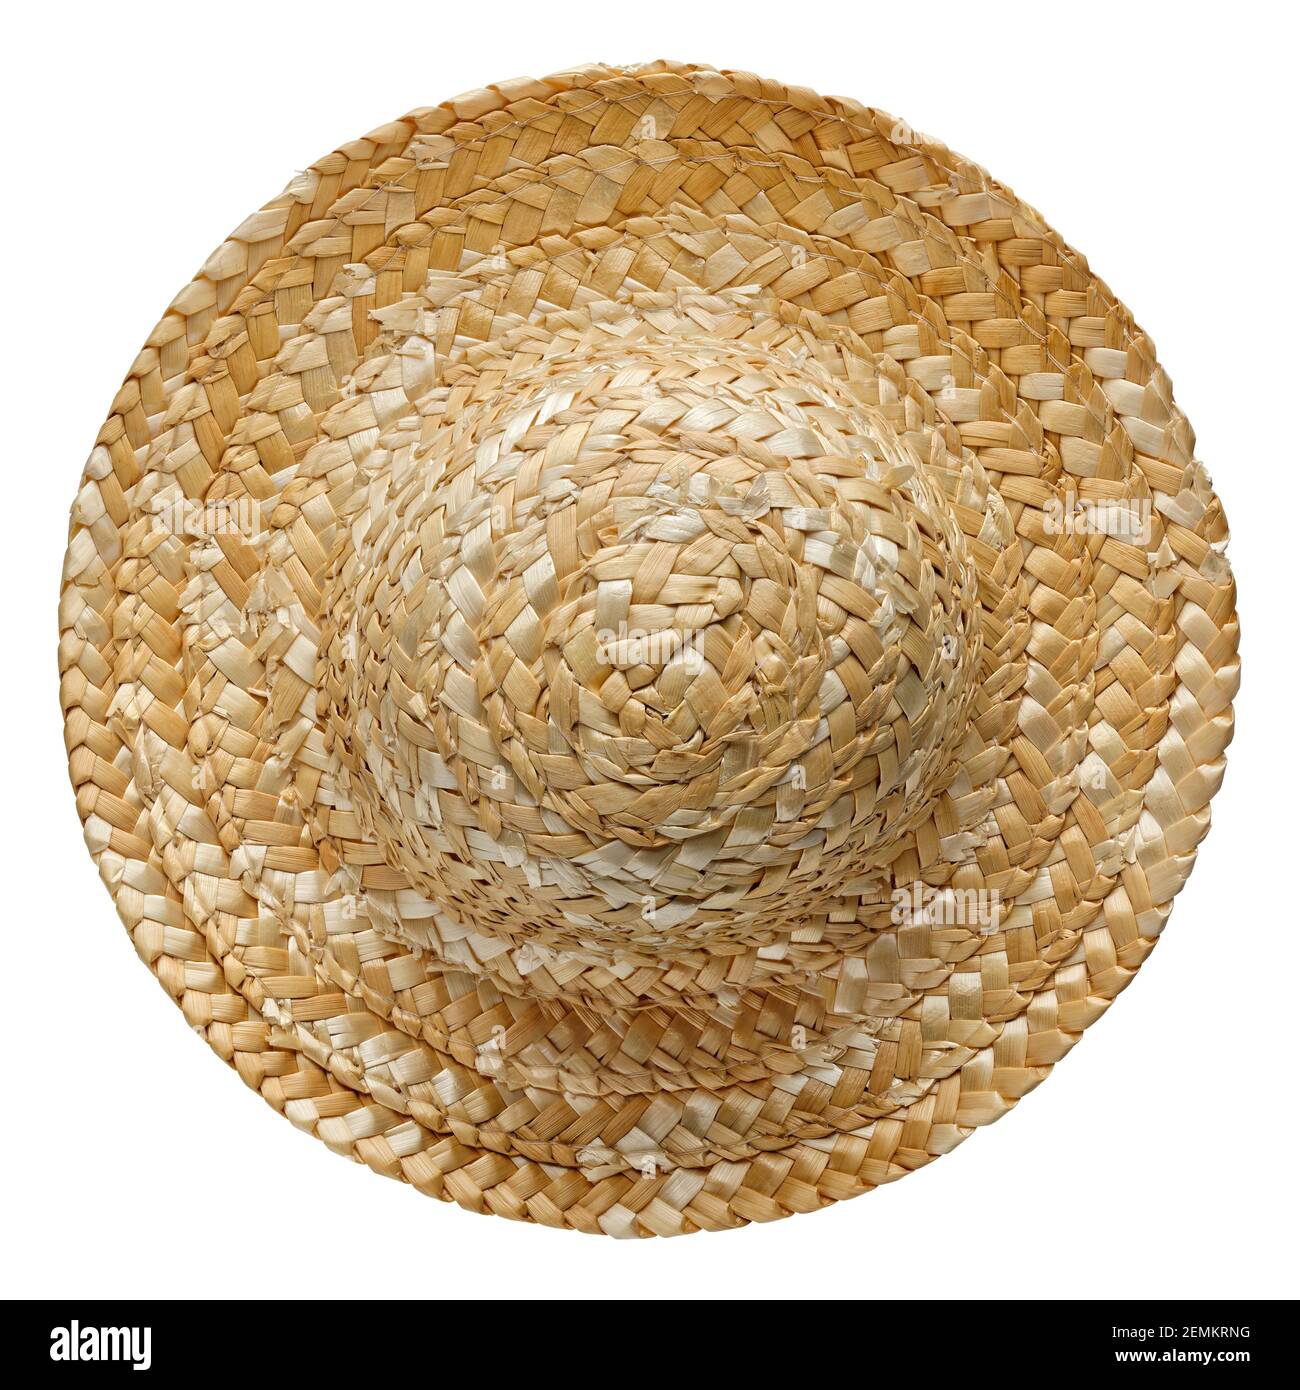 Chapeau de paille rond, vue de dessus, isolé sur fond blanc Photo Stock -  Alamy